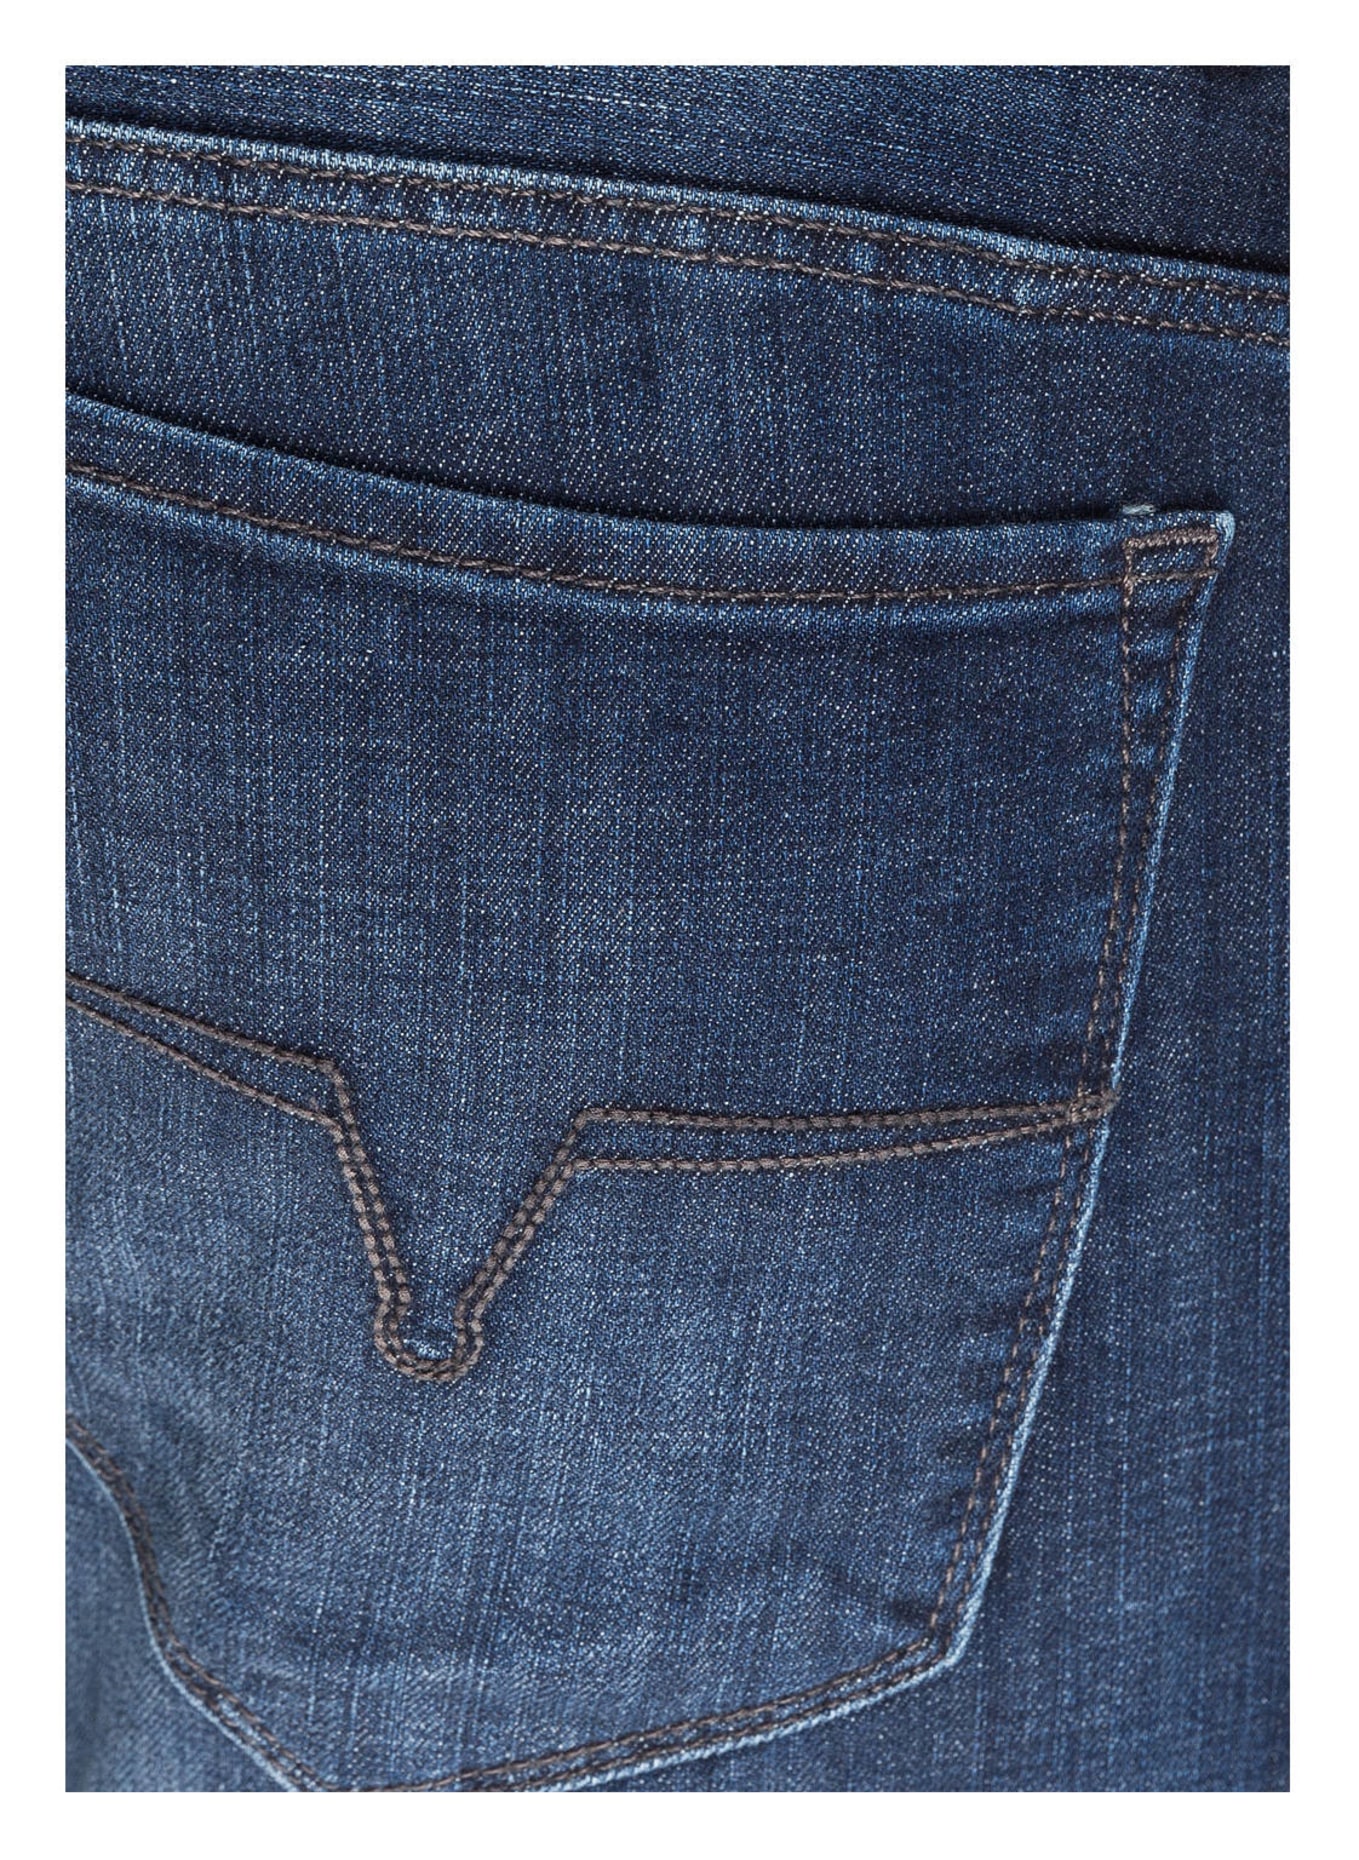 JOOP! Jeans STEPHEN Slim Fit, Farbe: 415 NAVY (Bild 5)